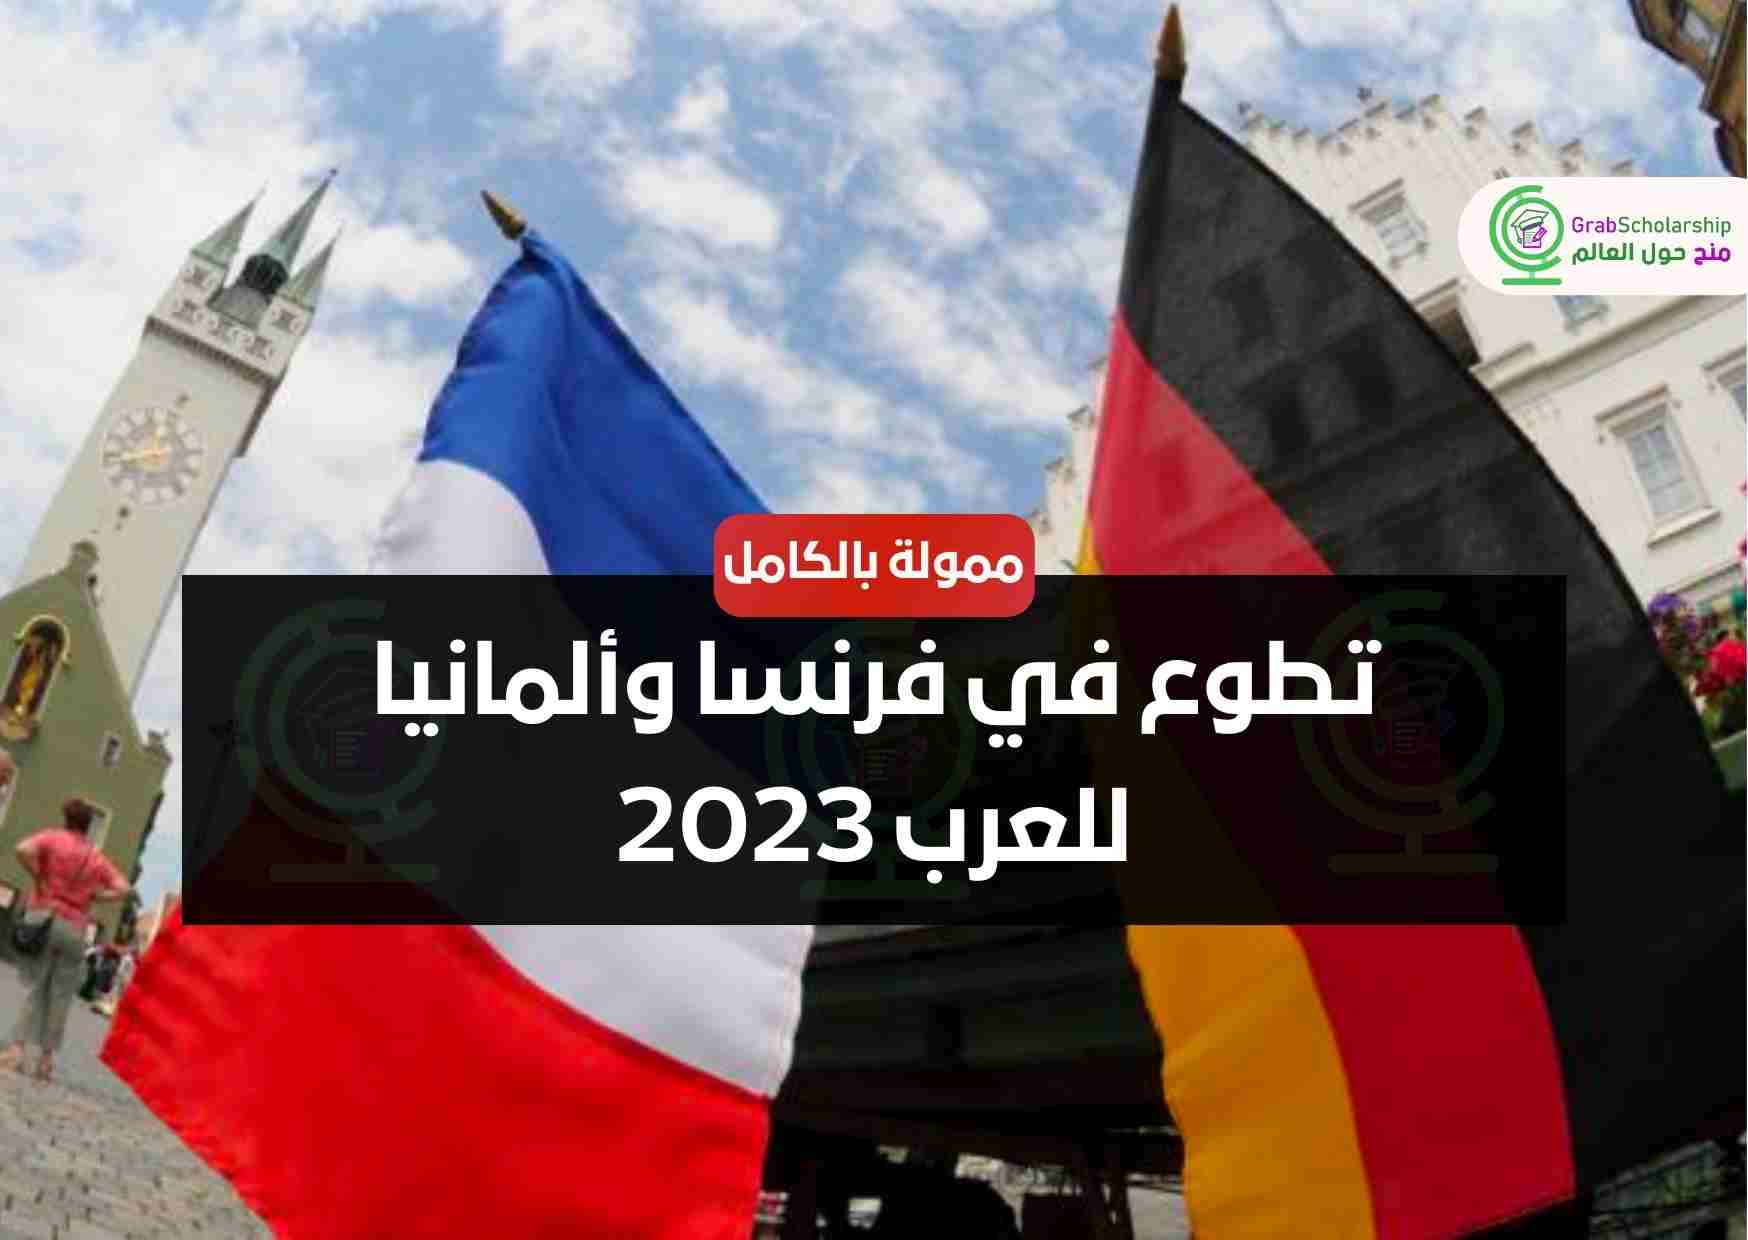 تطوع في فرنسا وألمانيا للعرب 2023